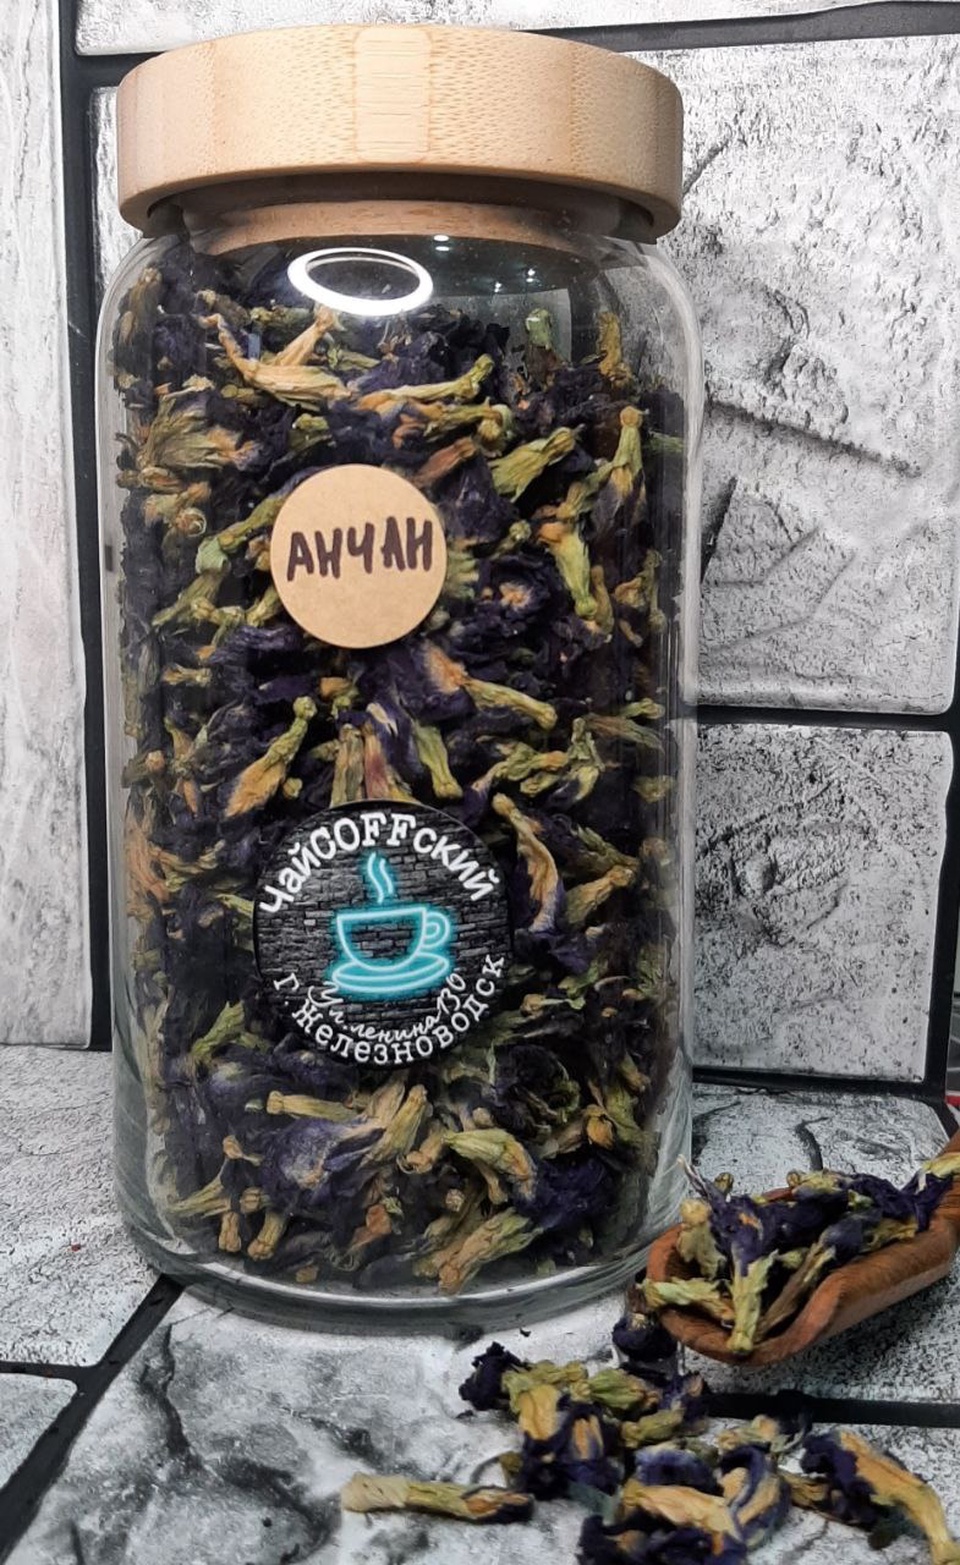 Чай "Анчан" или "Синий чай" - 800 ₽, заказать онлайн.